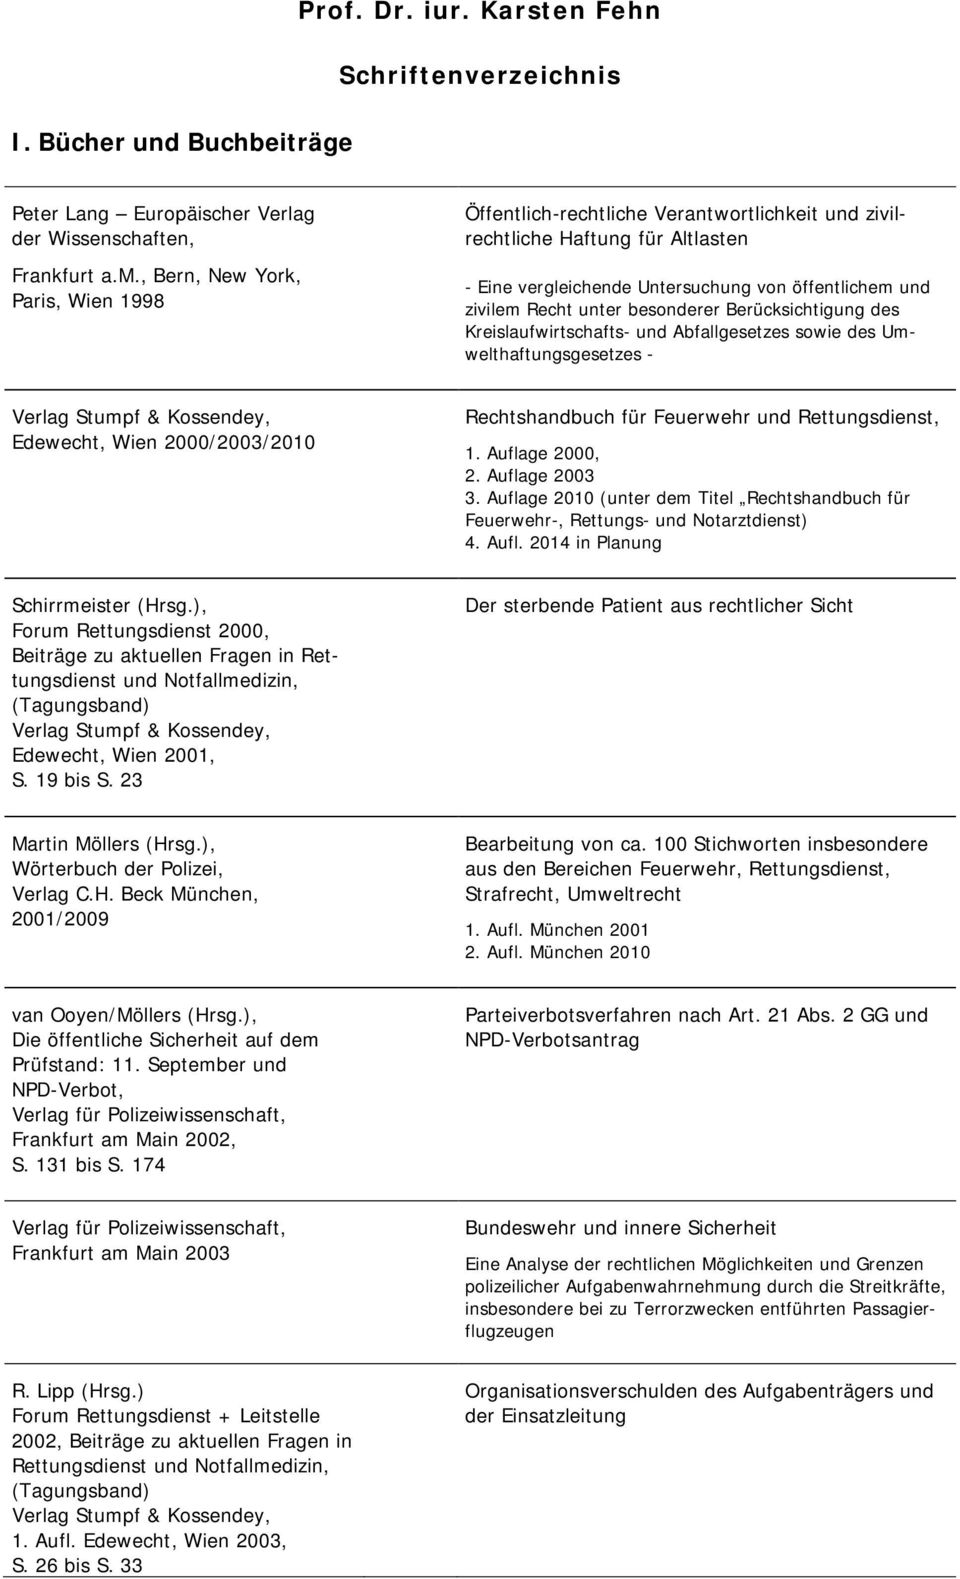 besonderer Berücksichtigung des Kreislaufwirtschafts- und Abfallgesetzes sowie des Umwelthaftungsgesetzes - Edewecht, Wien 2000/2003/2010 Rechtshandbuch für Feuerwehr und, 1. Auflage 2000, 2.